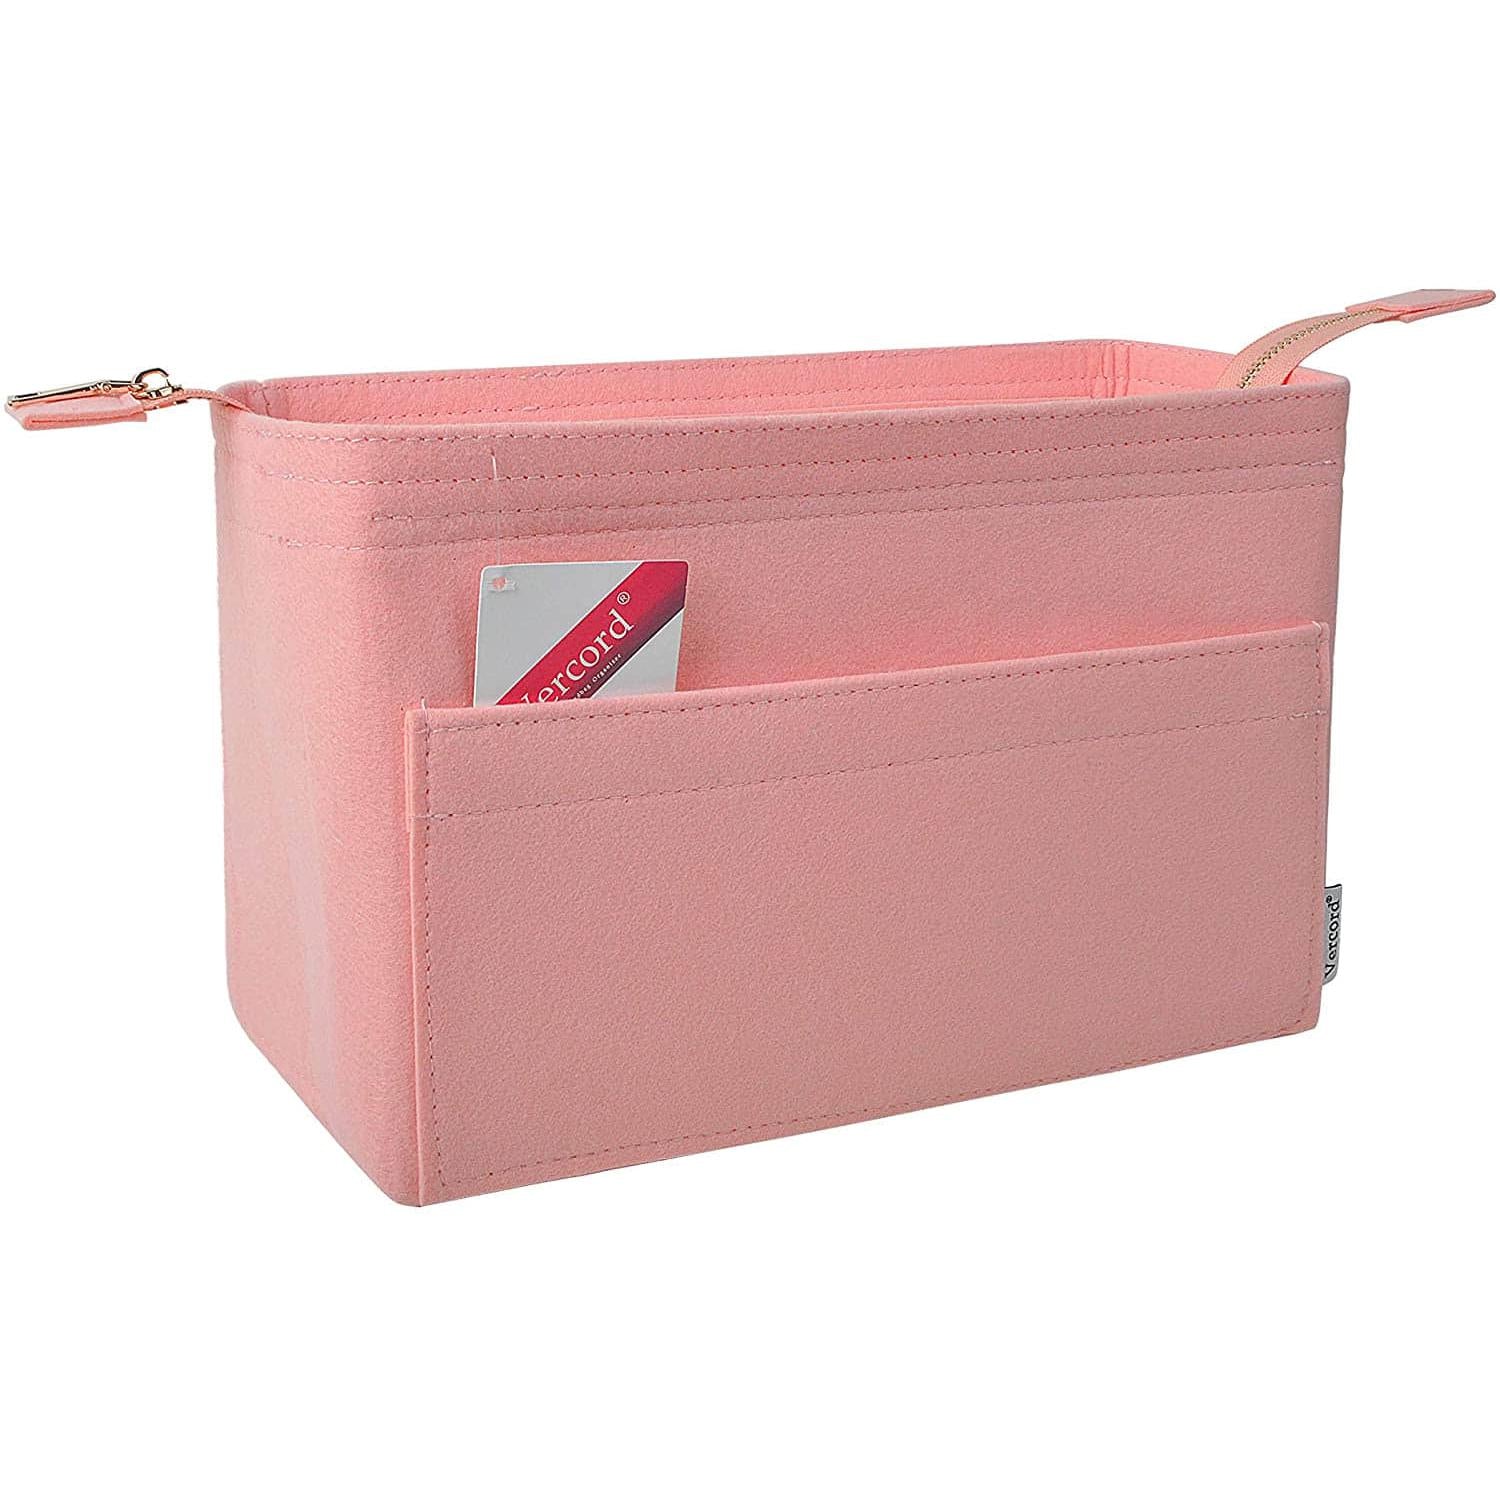 Neverfull MM Tote Handbag Red/beige/pink Felt Insert / 